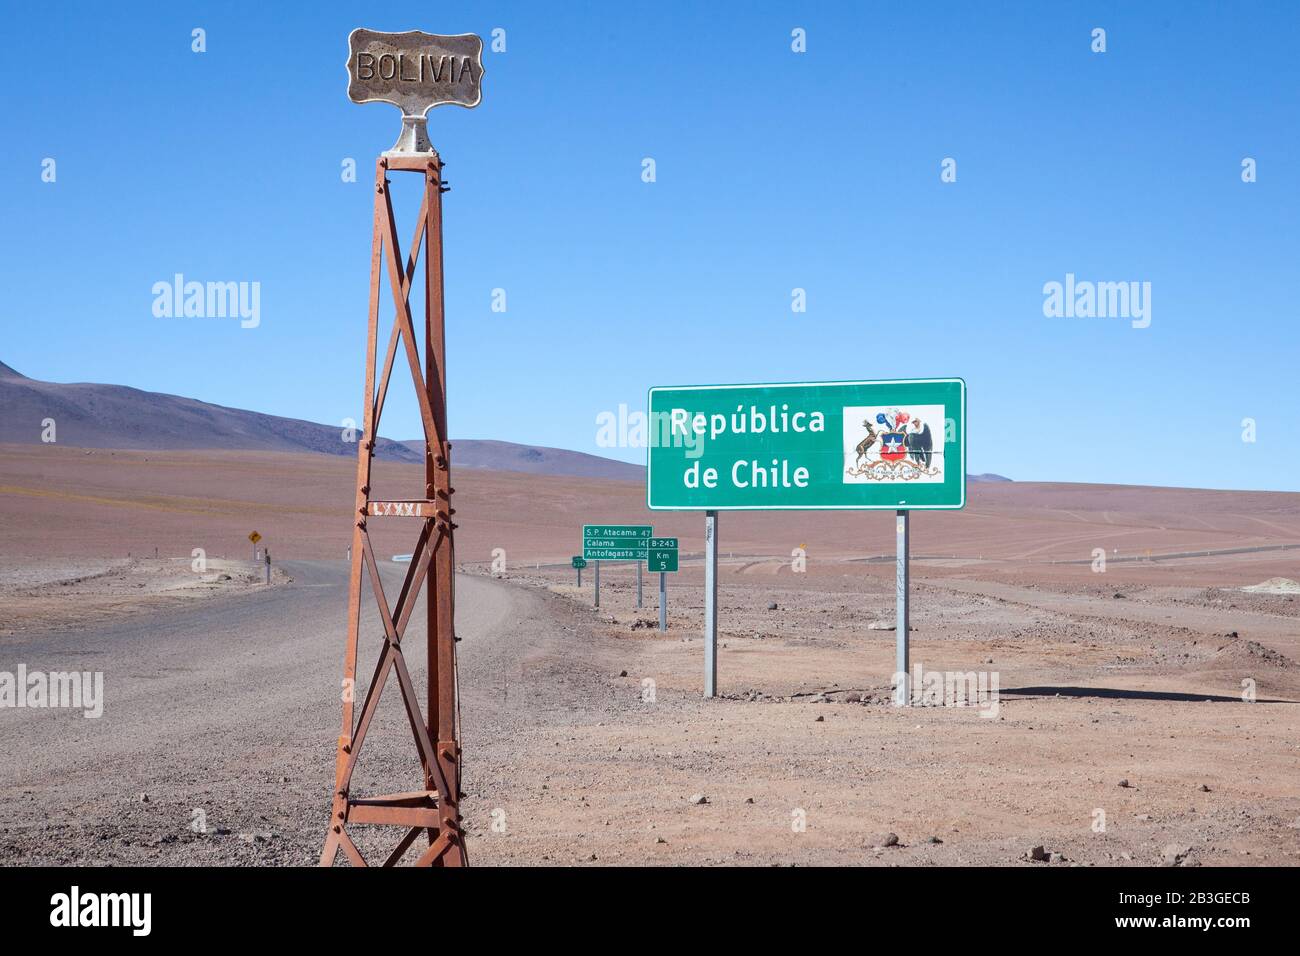 Deux signes distinguent la frontière entre la Bolivie et le Chili dans le désert sec de désolate. Banque D'Images